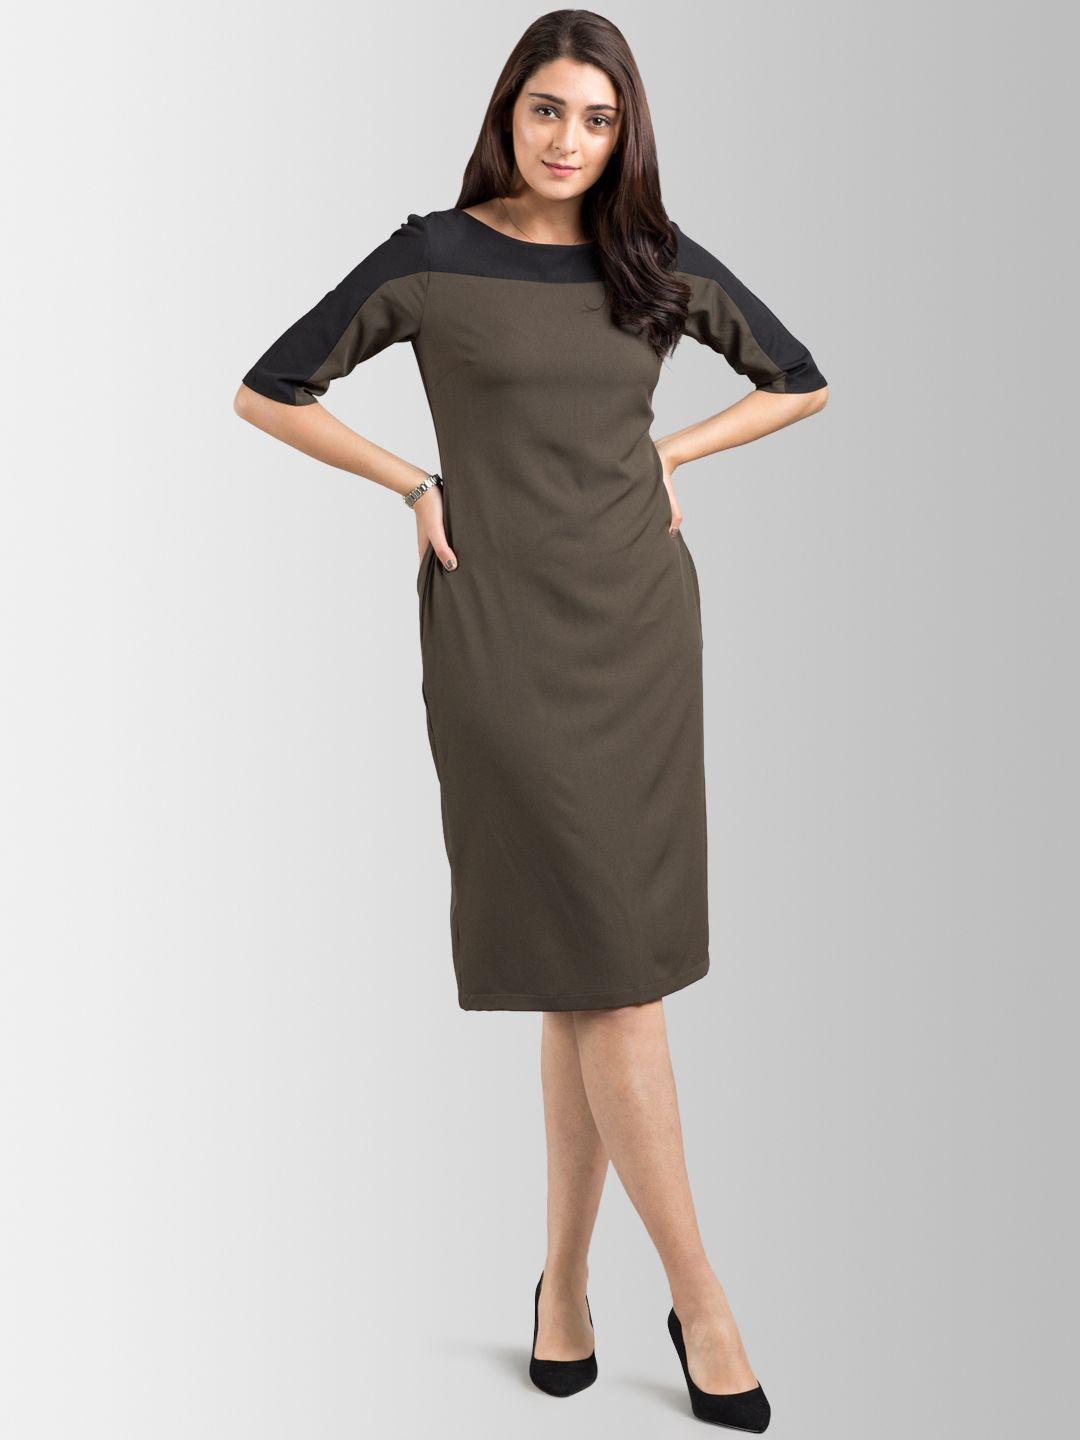 fablestreet women olive brown & black sheath dress